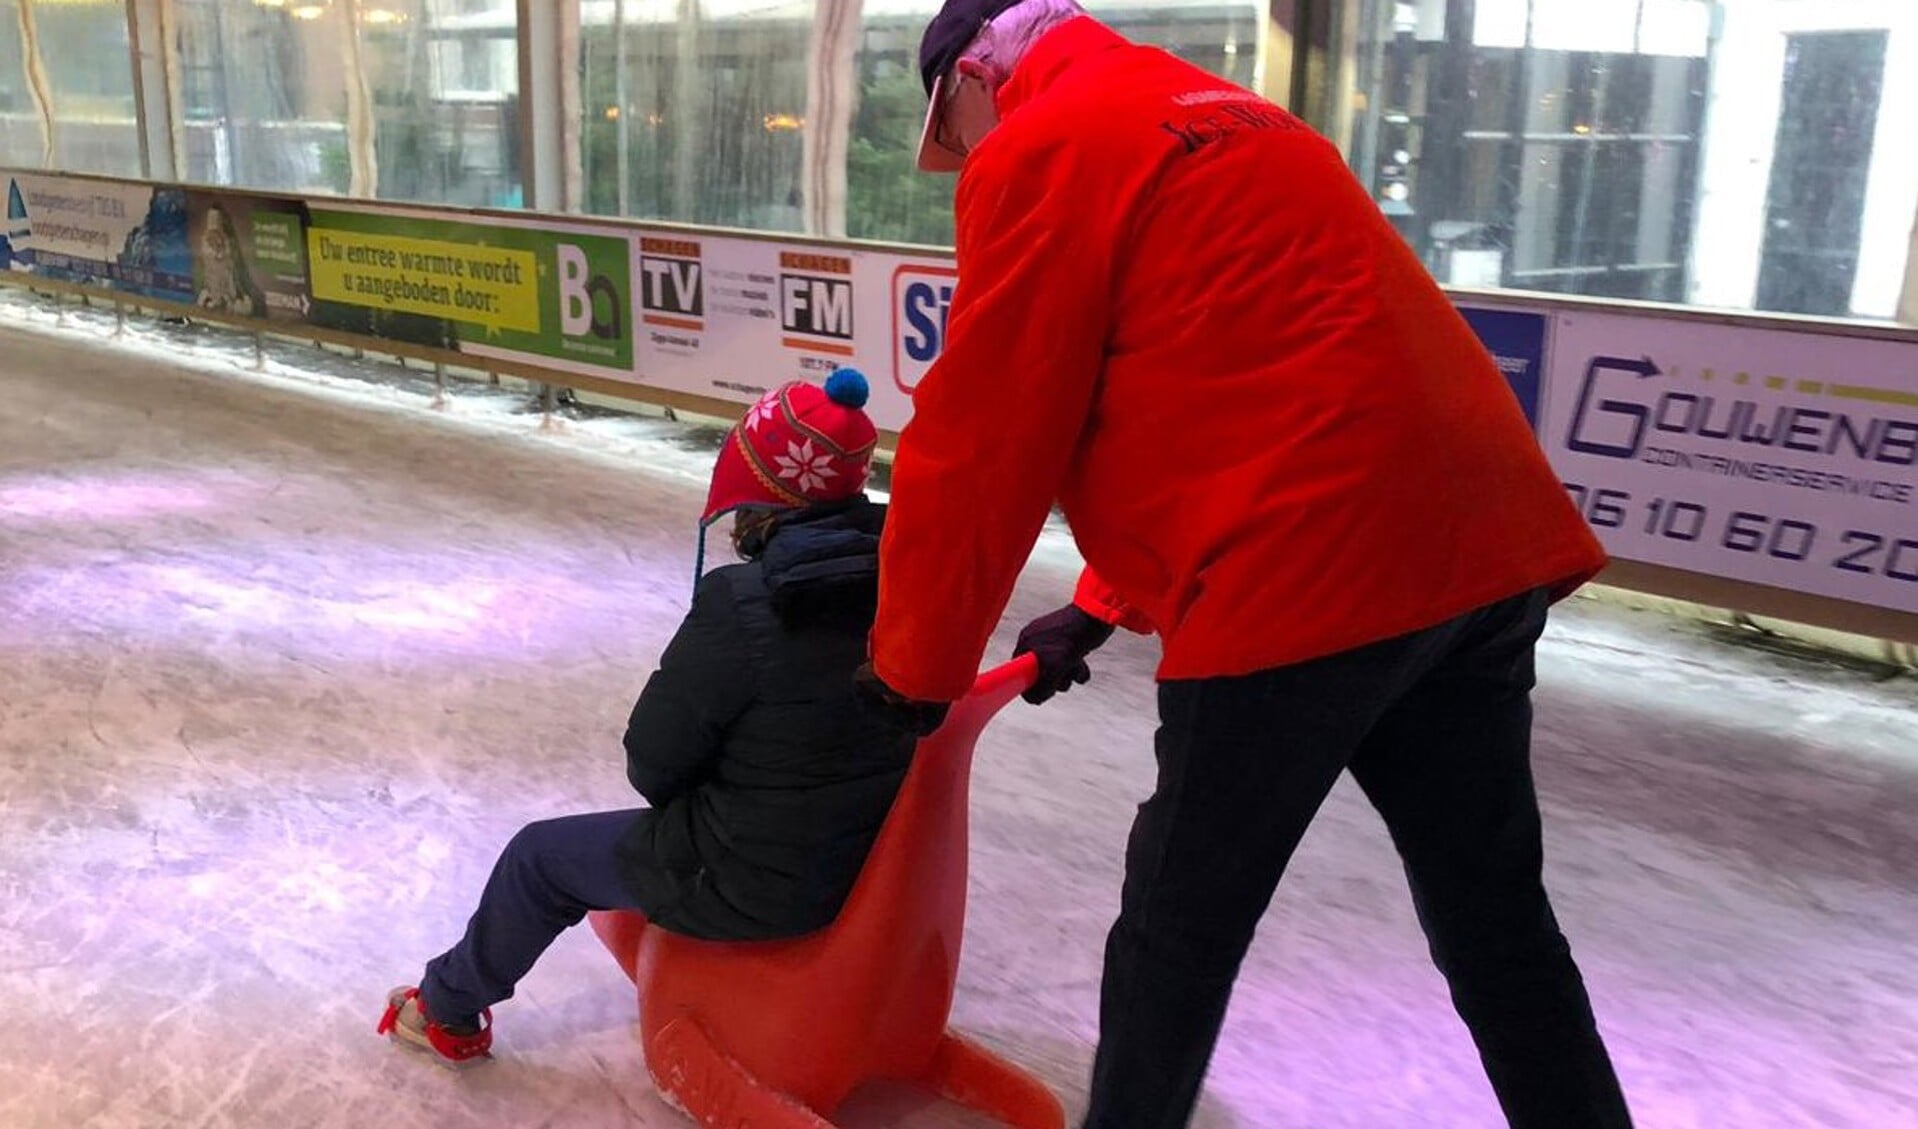 Met een maatje schaatsen op de ijsbaan Schagen.